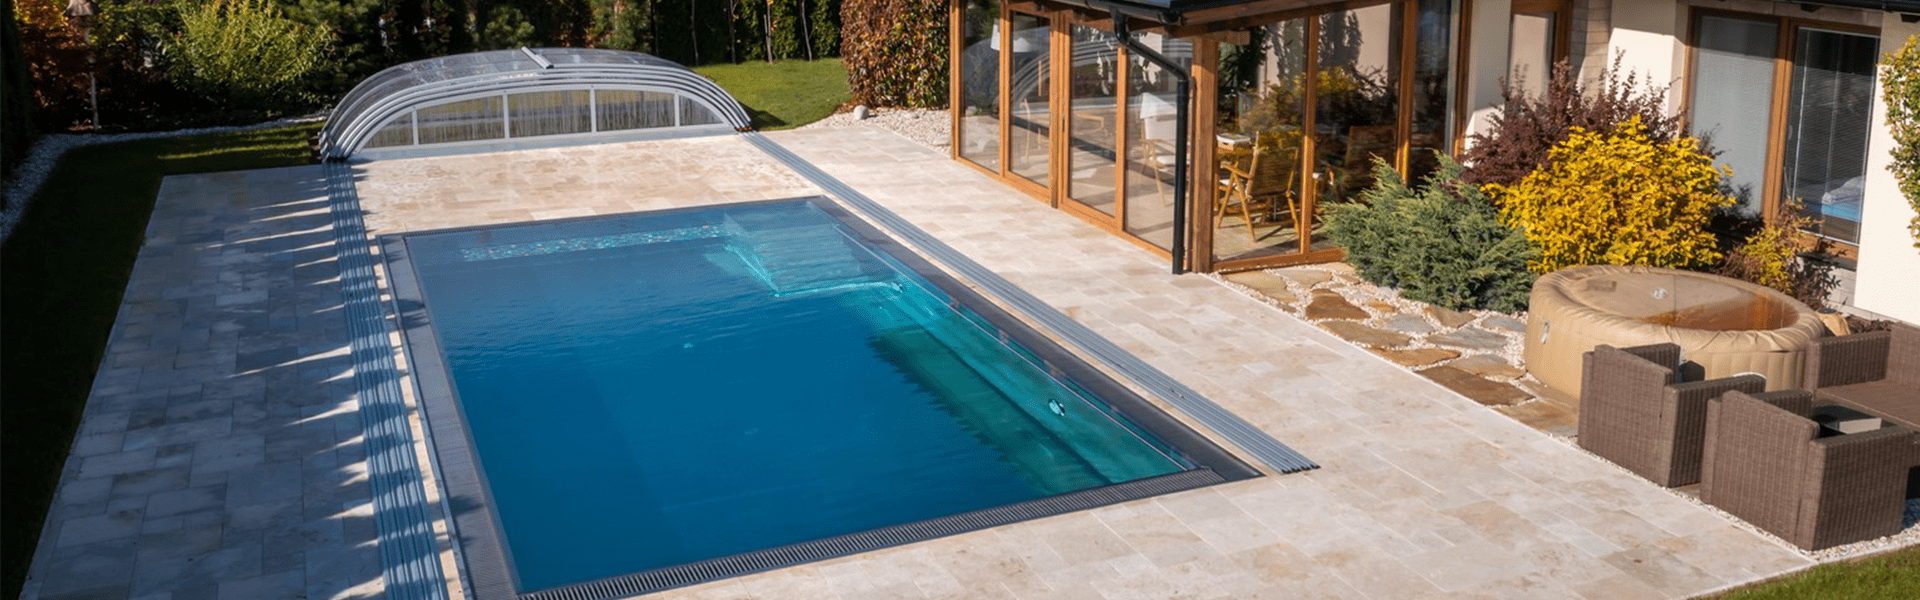 Nerezový přelivový bazén se zastřešením na venkovní terase